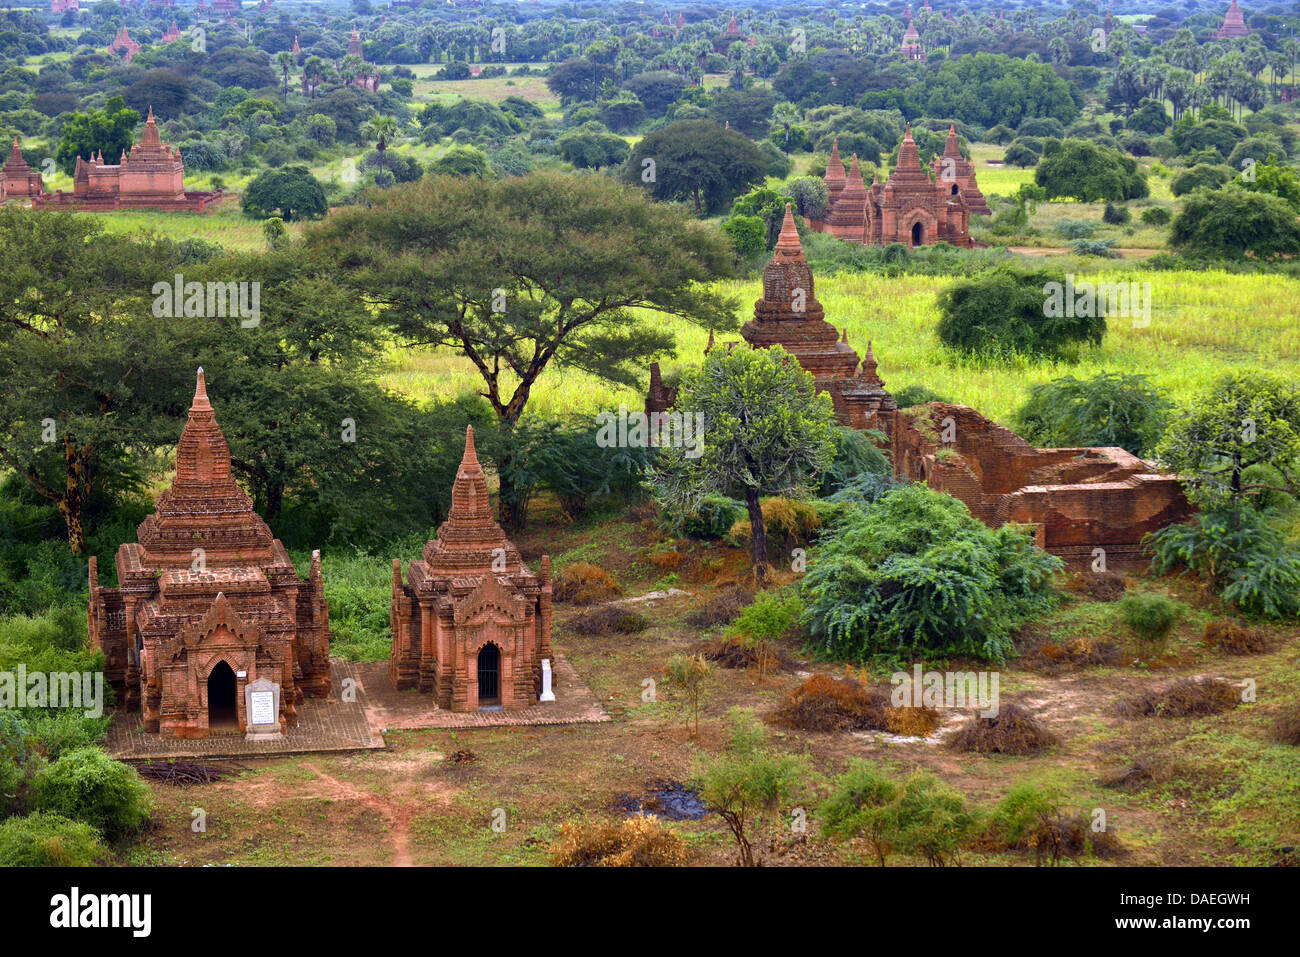 Vista panorámica de Buddhistic templos en el área de Bagan, la capital histórica del Reino de Pagan, con sus más de dos mil edificios sagrados, Birmania, Bagan Foto de stock